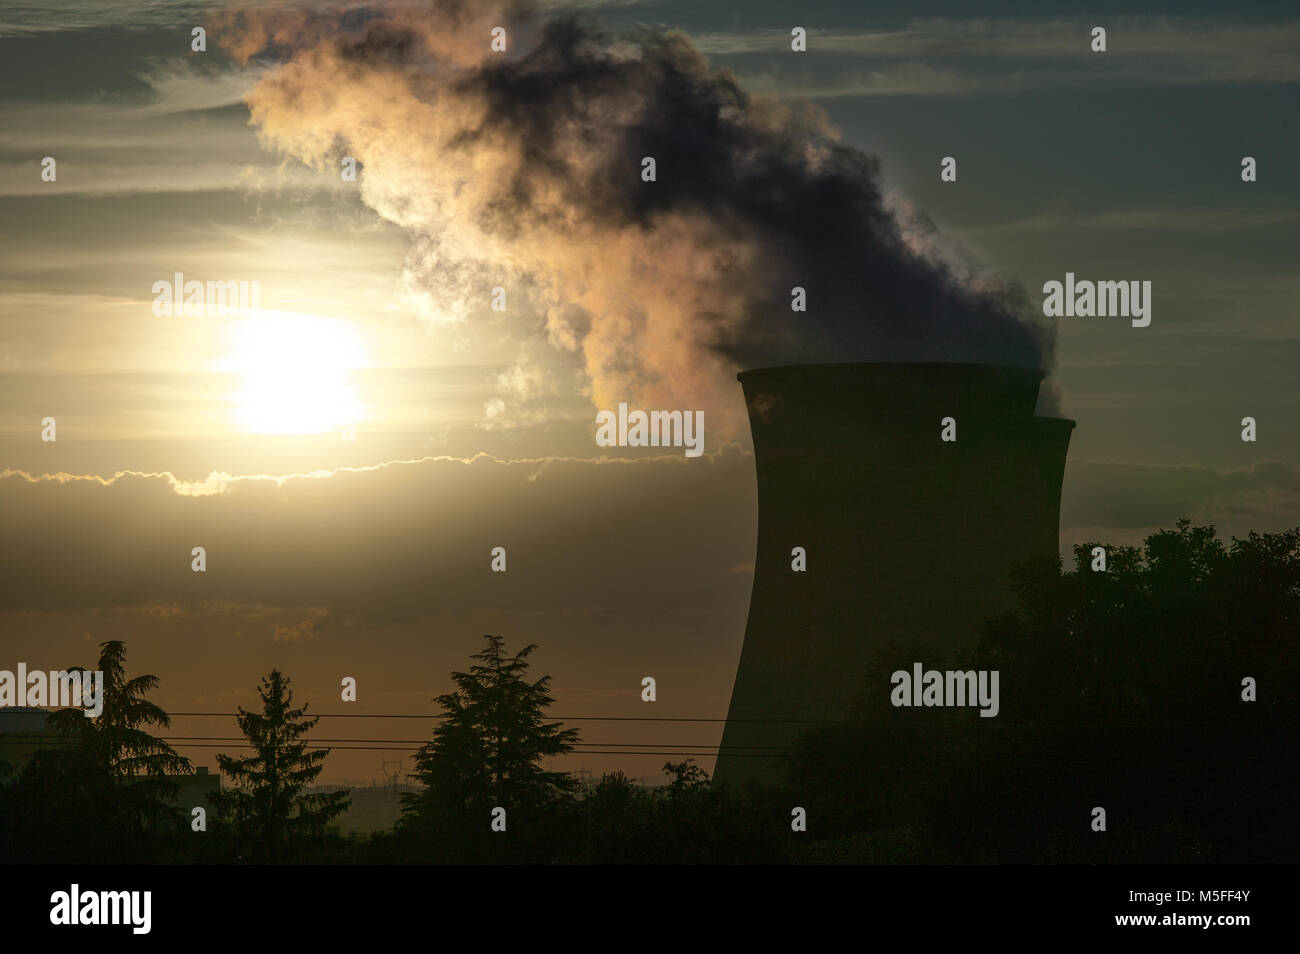 France, nuclear power plant. Saint-Vulbas, Bugey, France Stock Photo